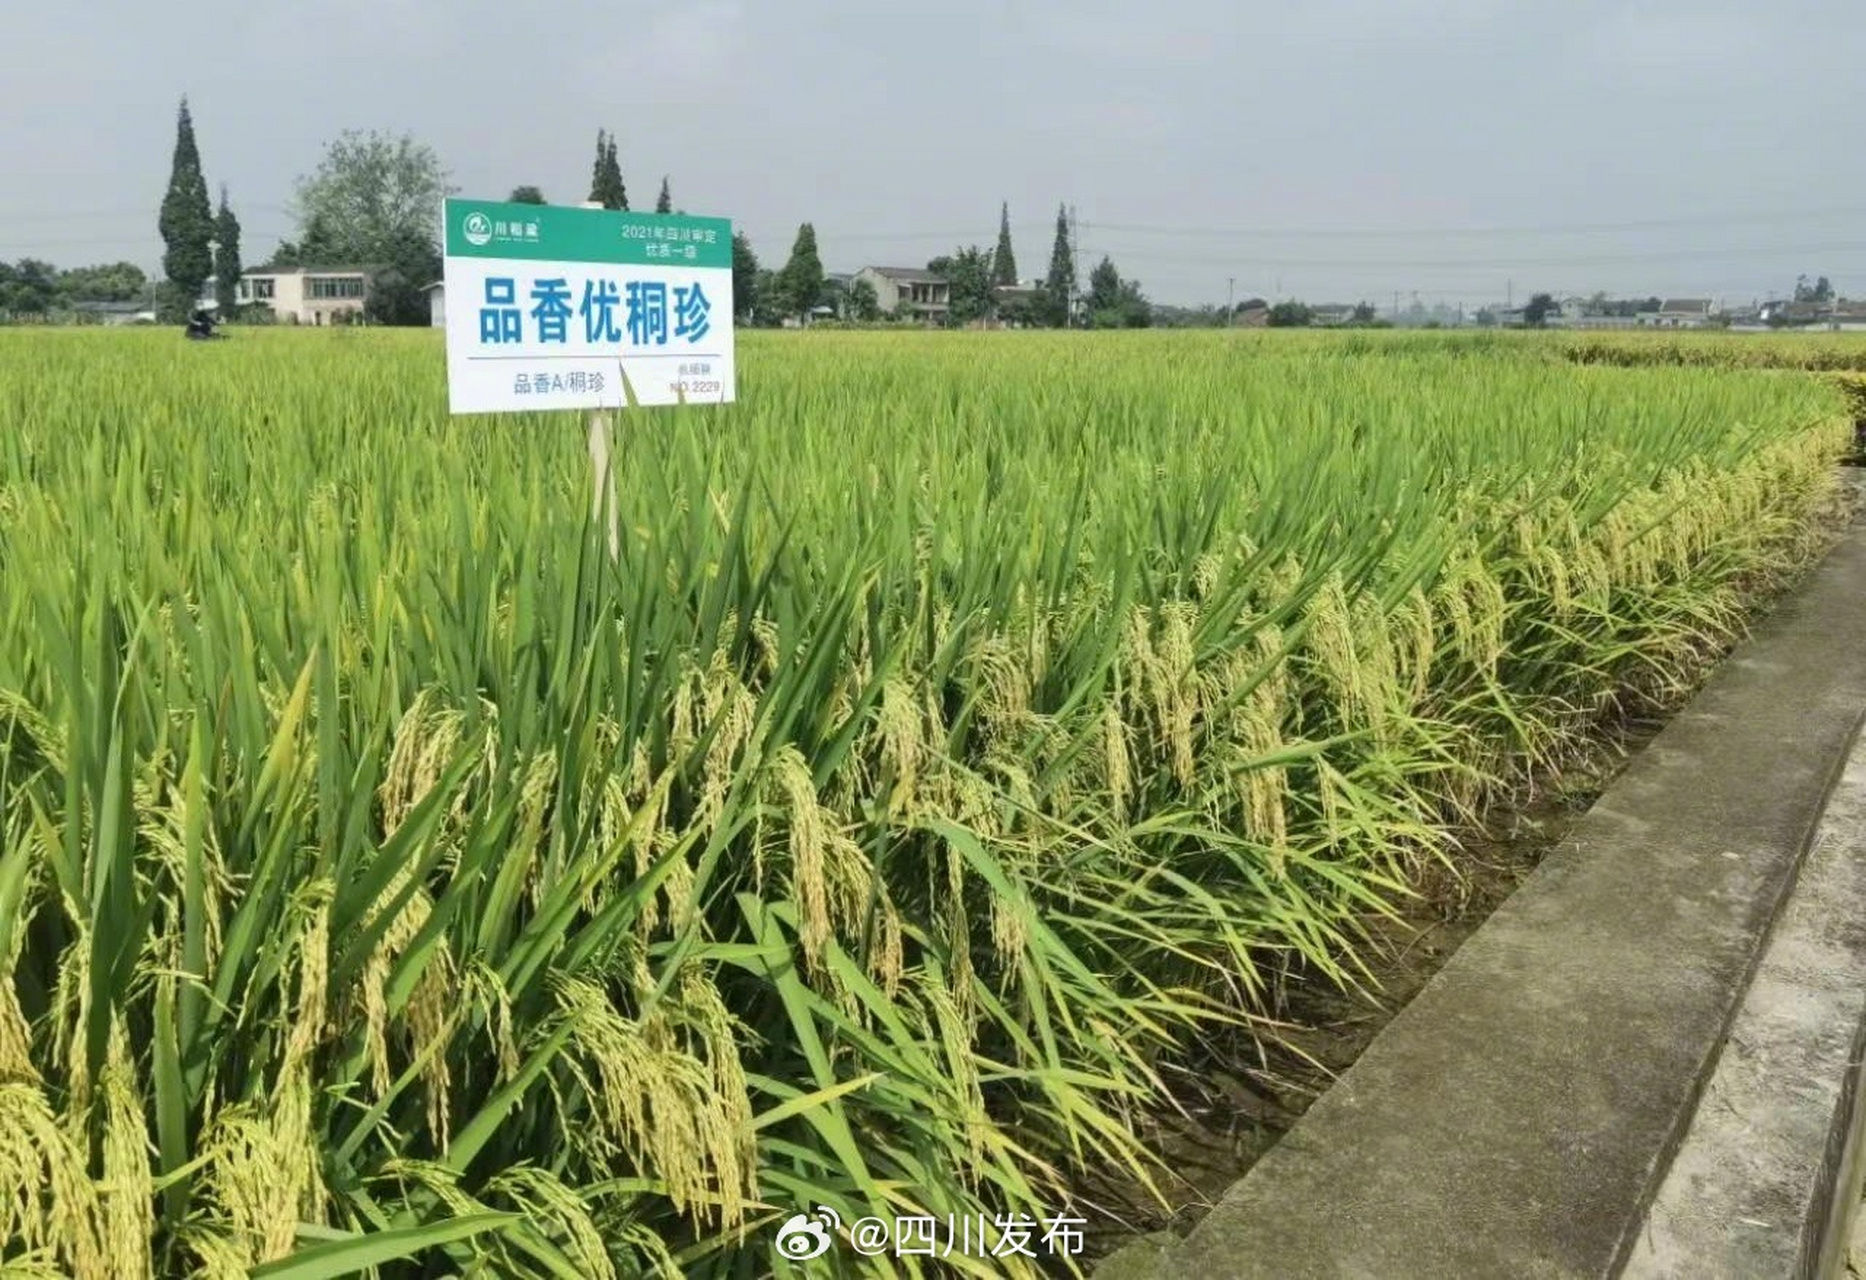 垦稻1866水稻品种简介图片